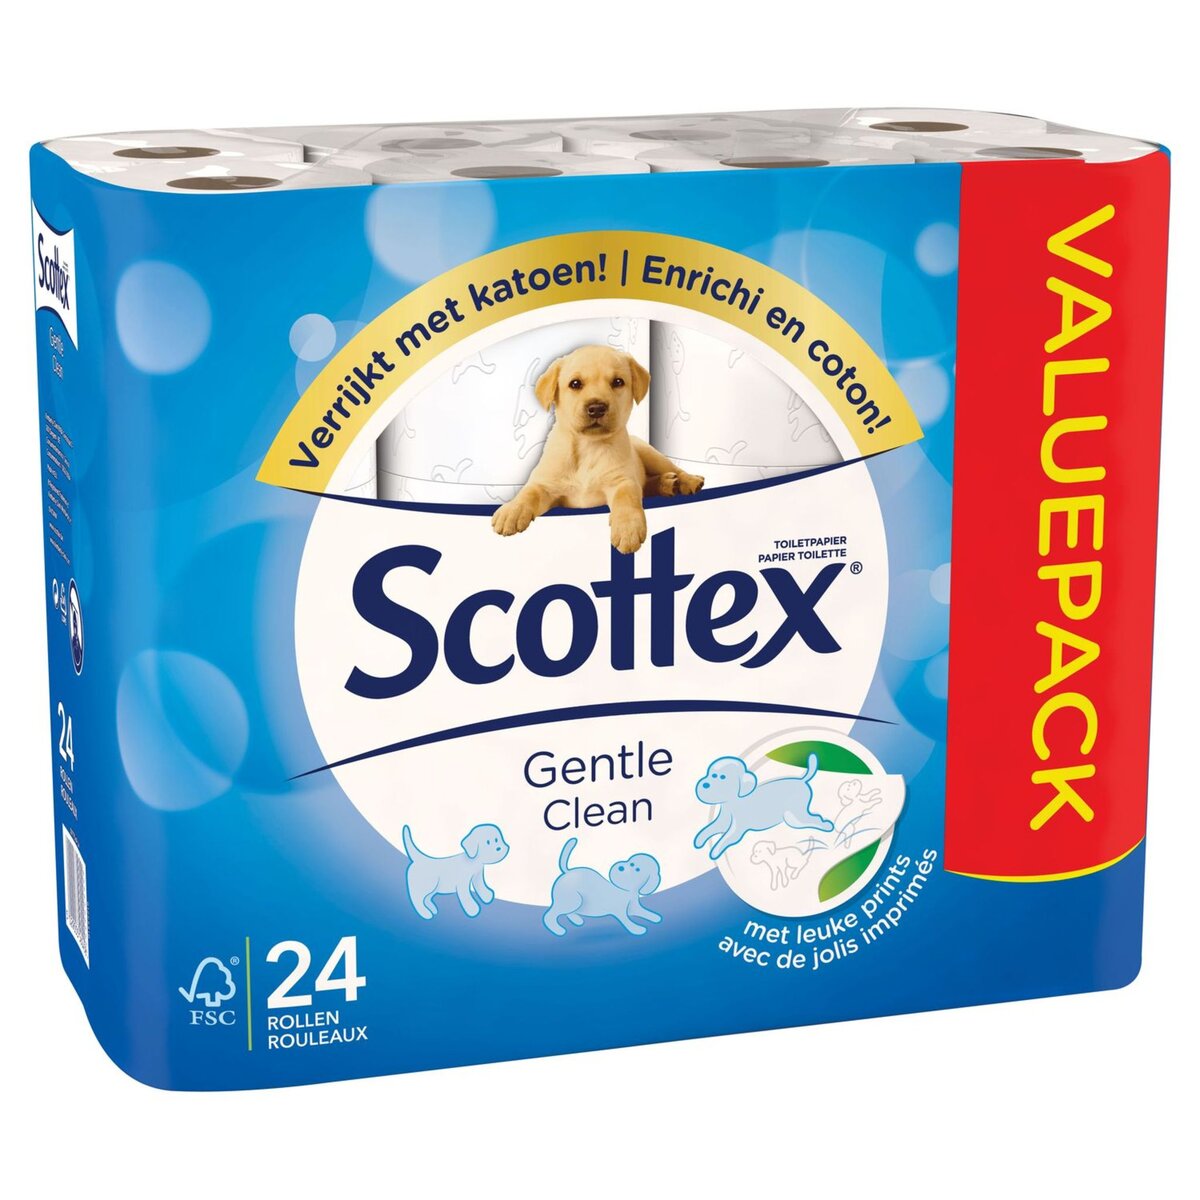 Scottex Papier toilette décoré enrichi en coton x24 24 rouleaux